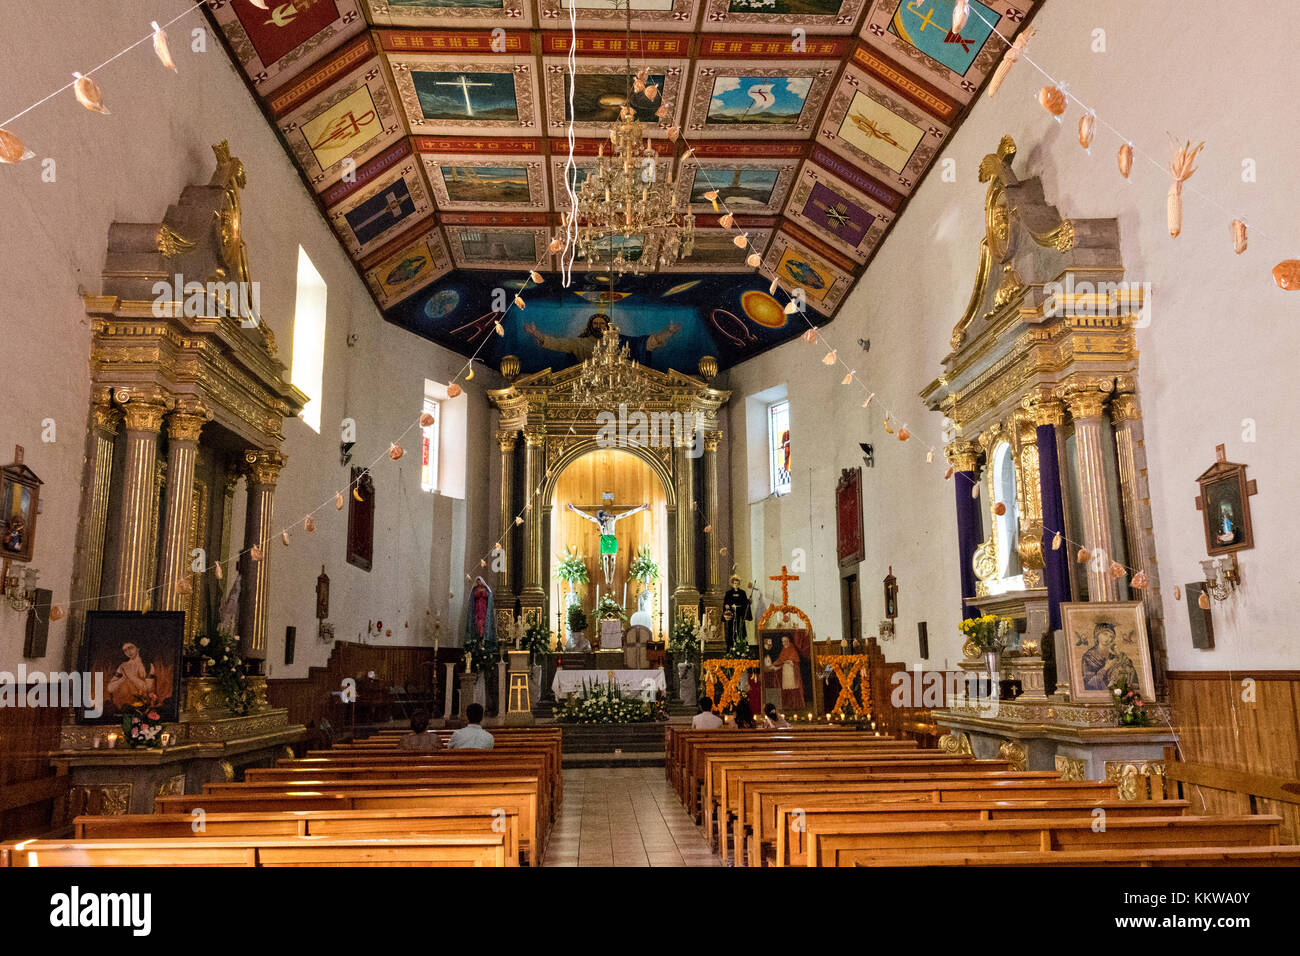 Interior view of the Parroquia de San Diego de Alcalá church in Quiroga, Michoacan, Mexico. Stock Photo